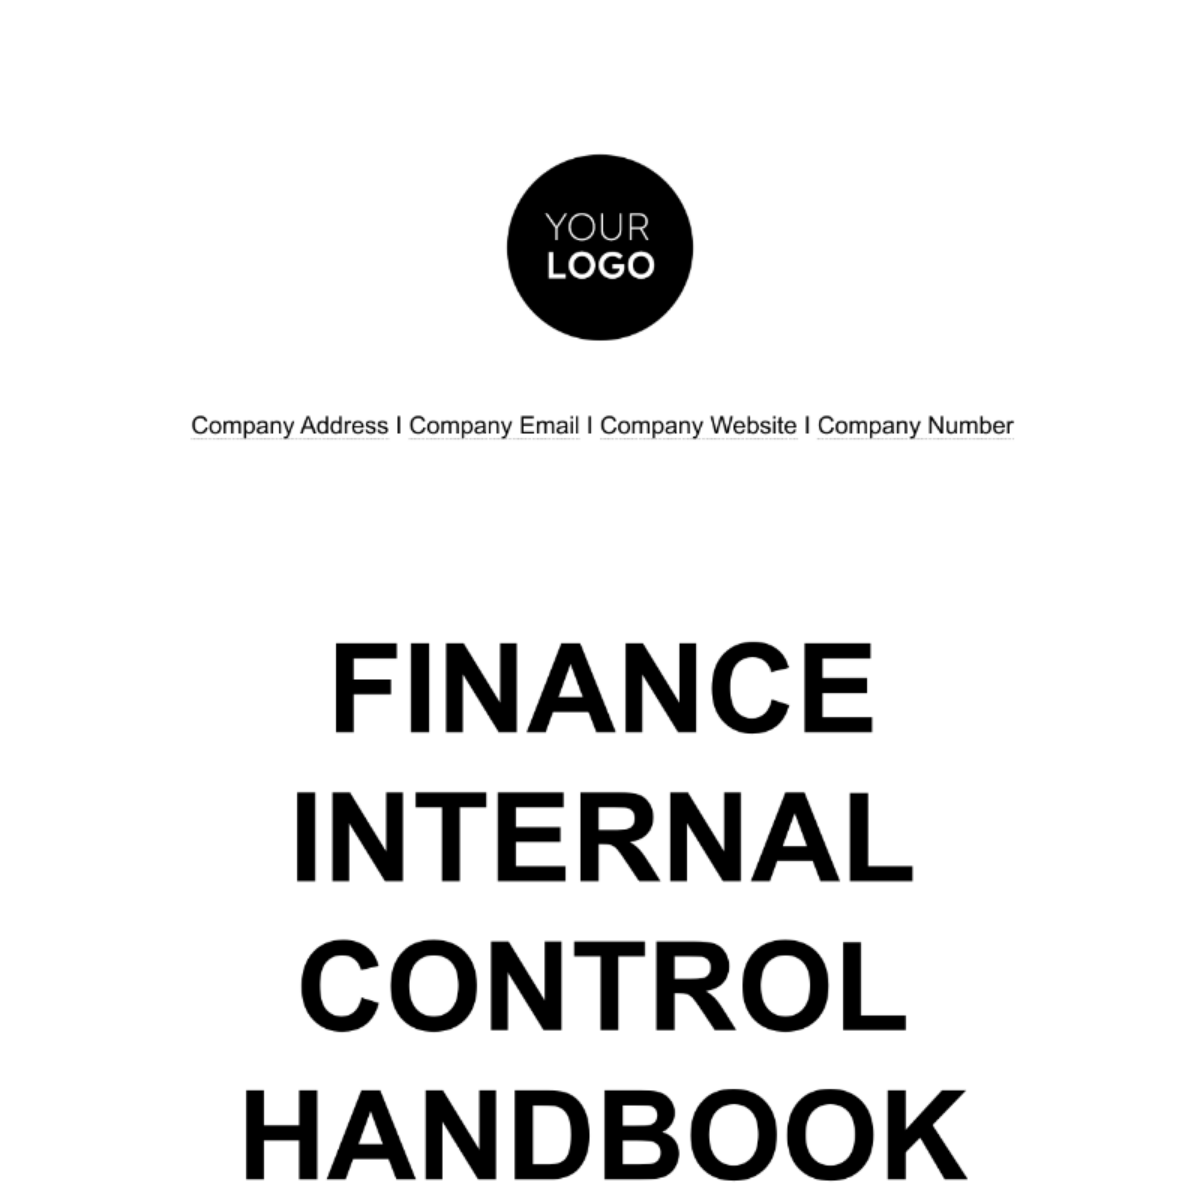 Finance Internal Control Handbook Template